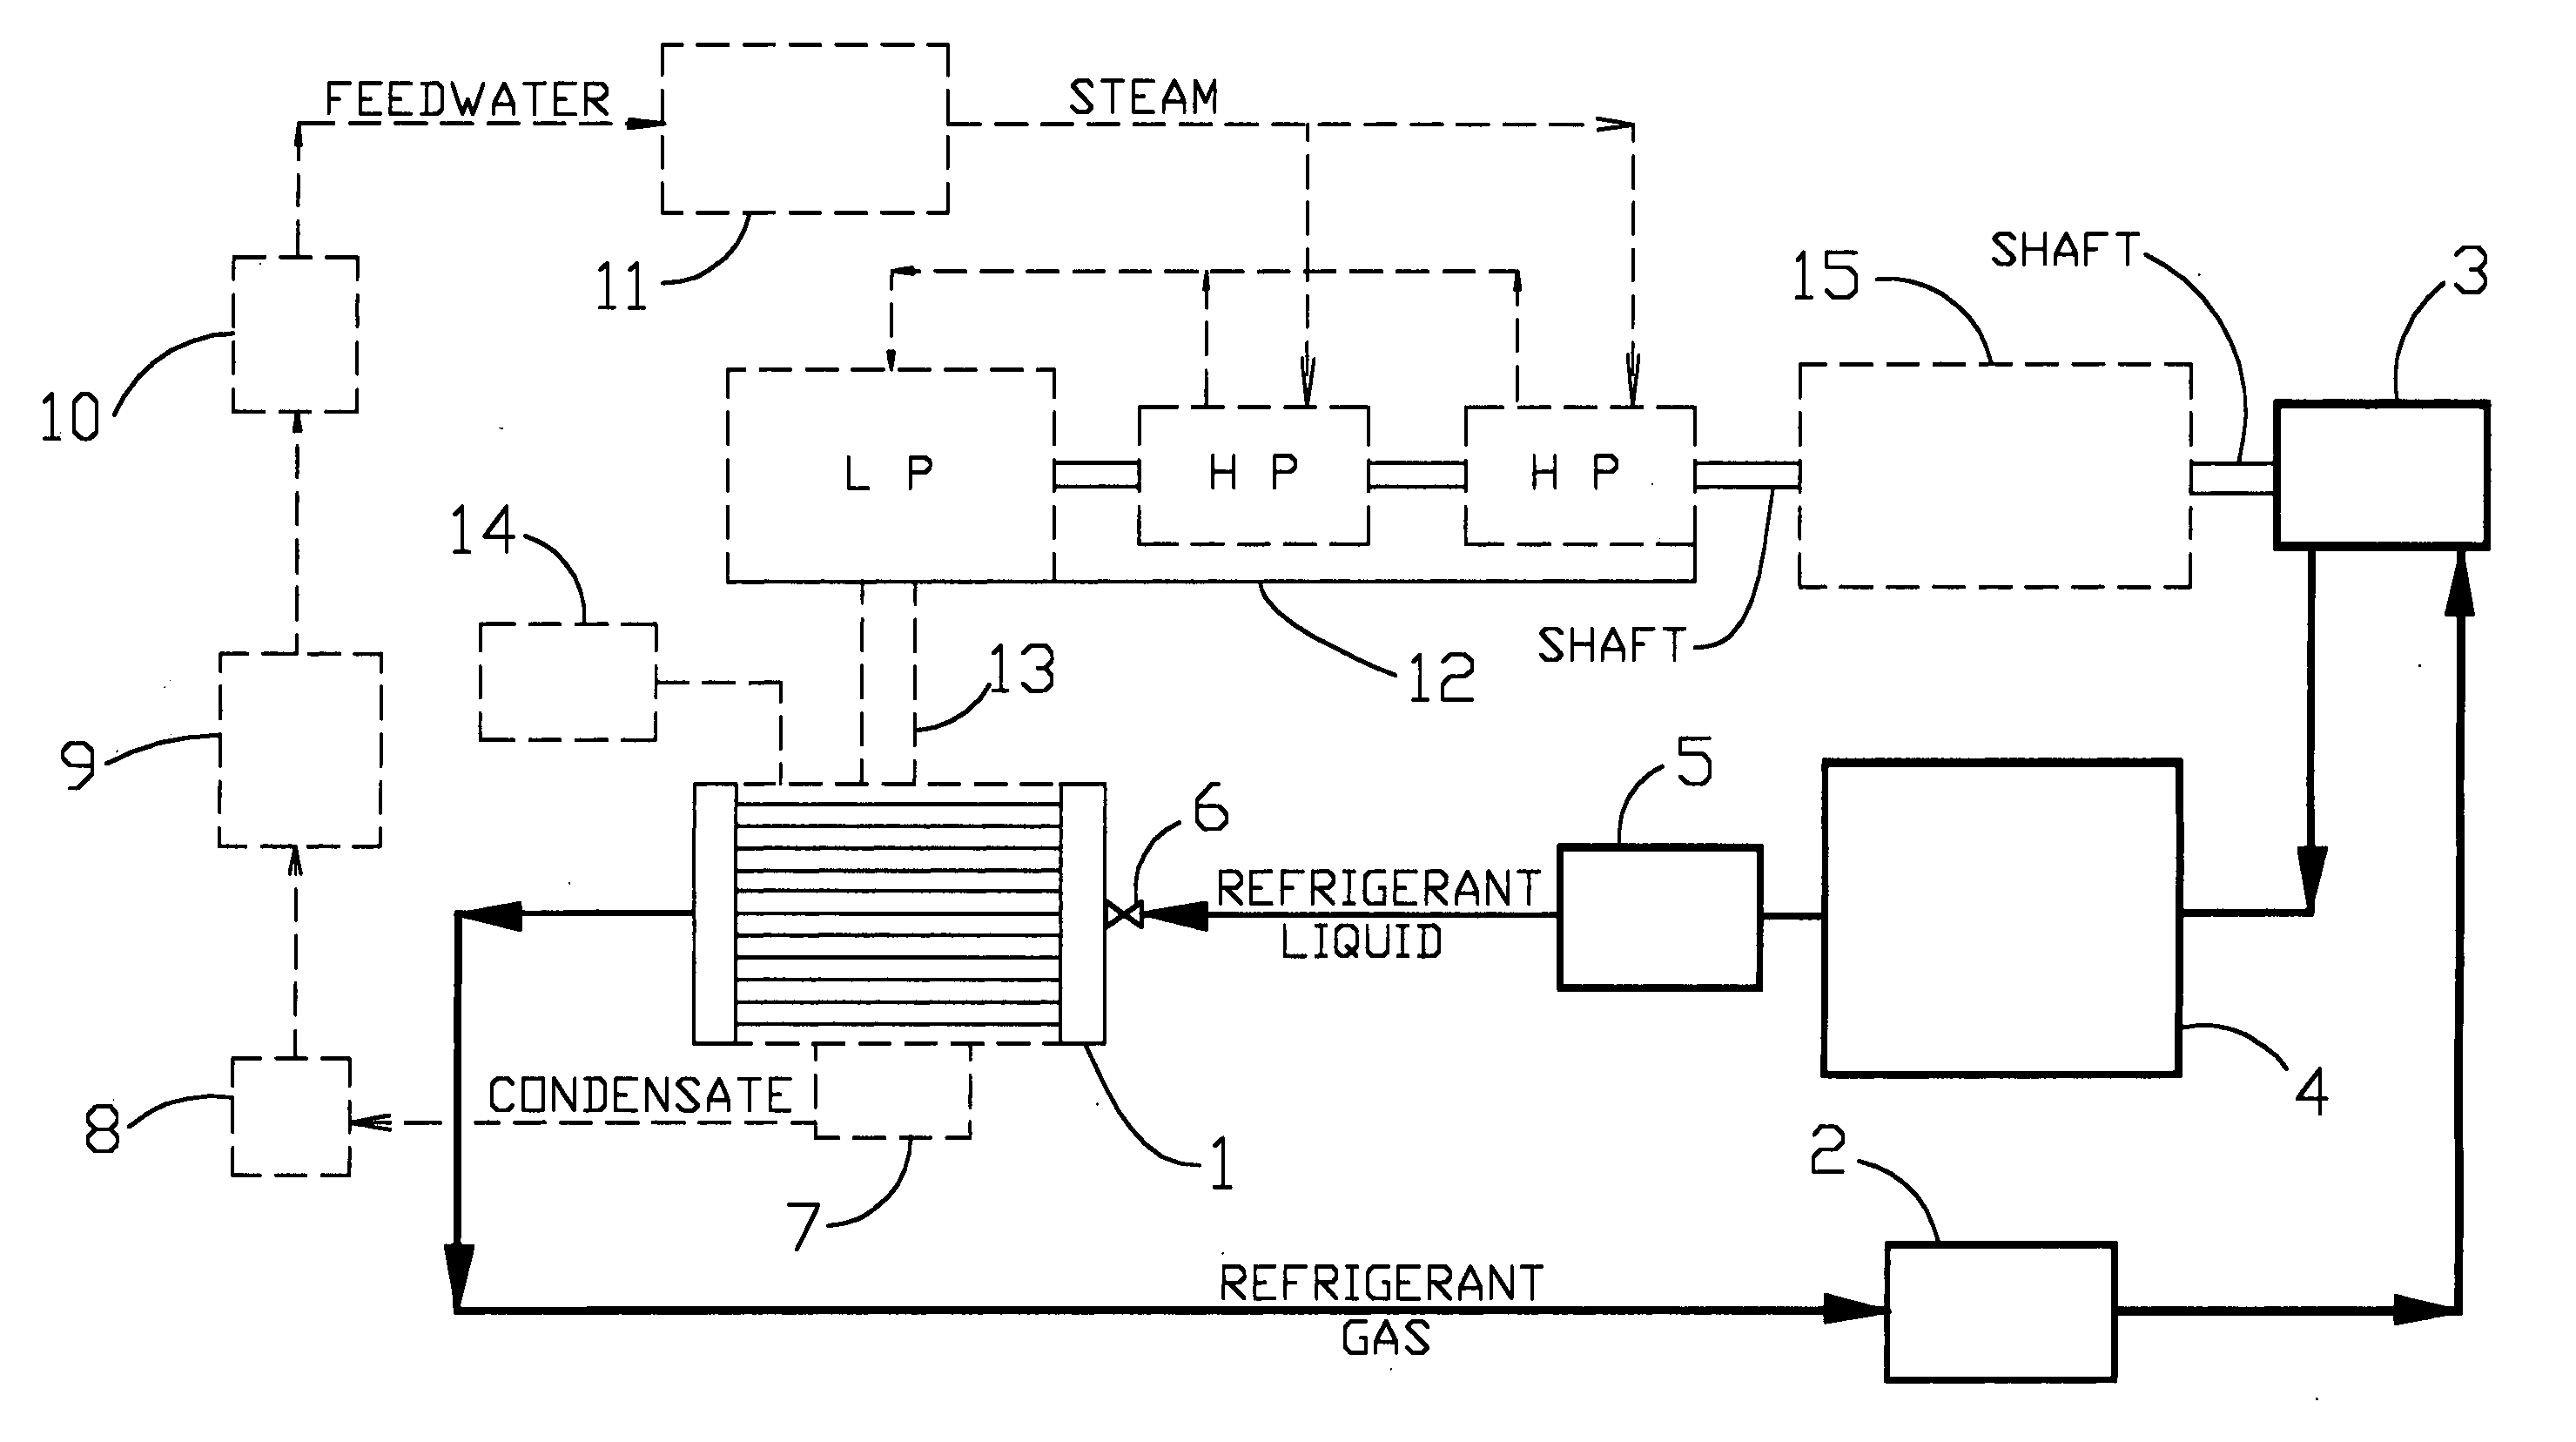 Refrigerant cooled main steam condenser